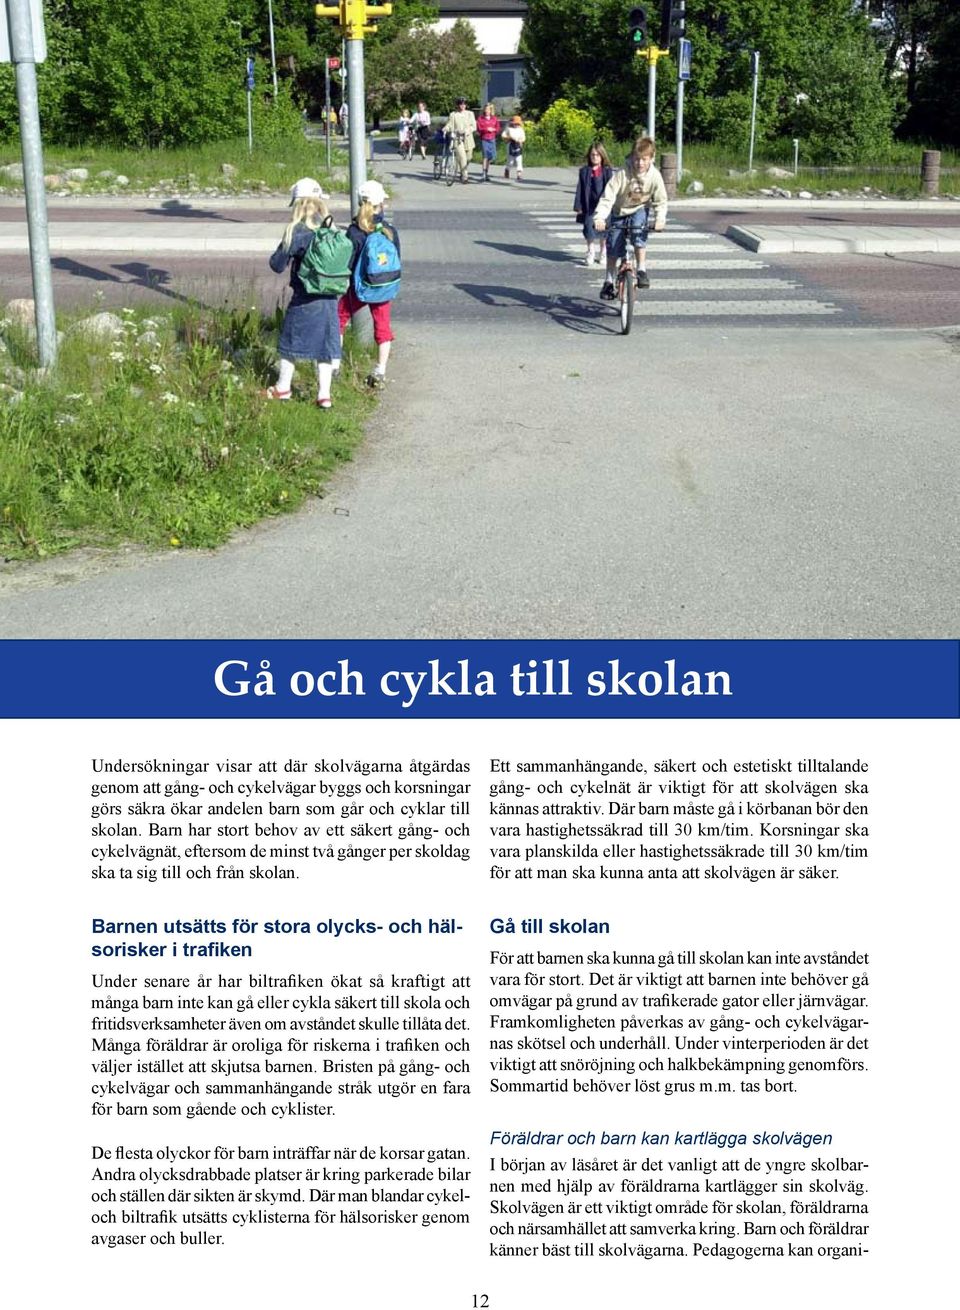 Ett sammanhängande, säkert och estetiskt tilltalande gång- och cykelnät är viktigt för att skolvägen ska kännas attraktiv. Där barn måste gå i körbanan bör den vara hastighetssäkrad till 30 km/tim.